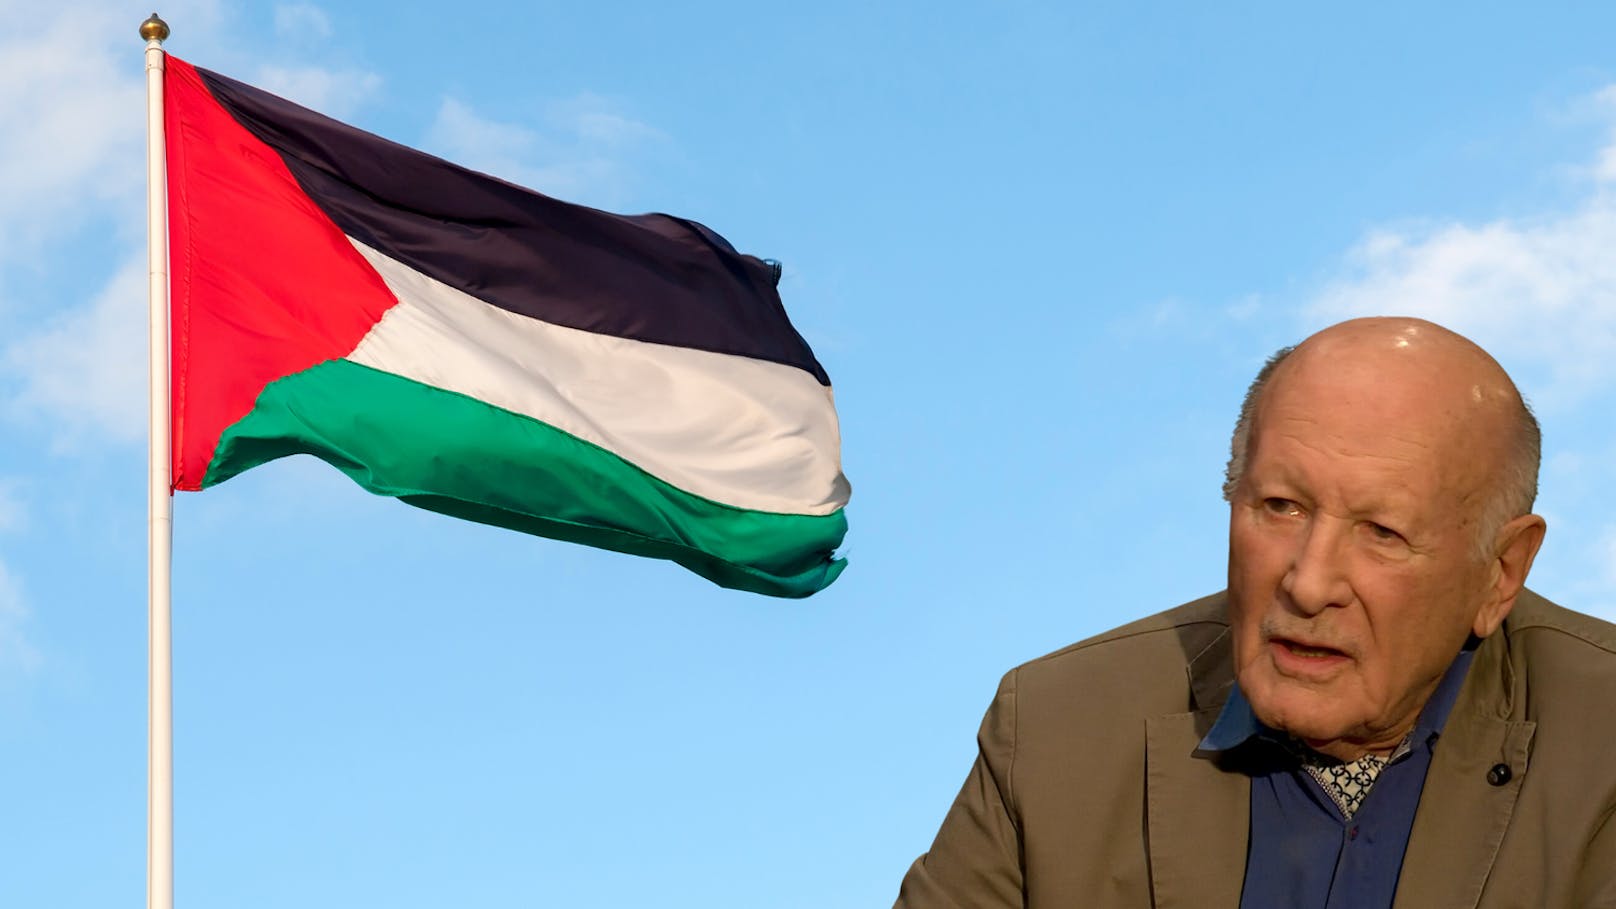 Nahost-Experte sieht Palästina-Anerkennung als Zäsur